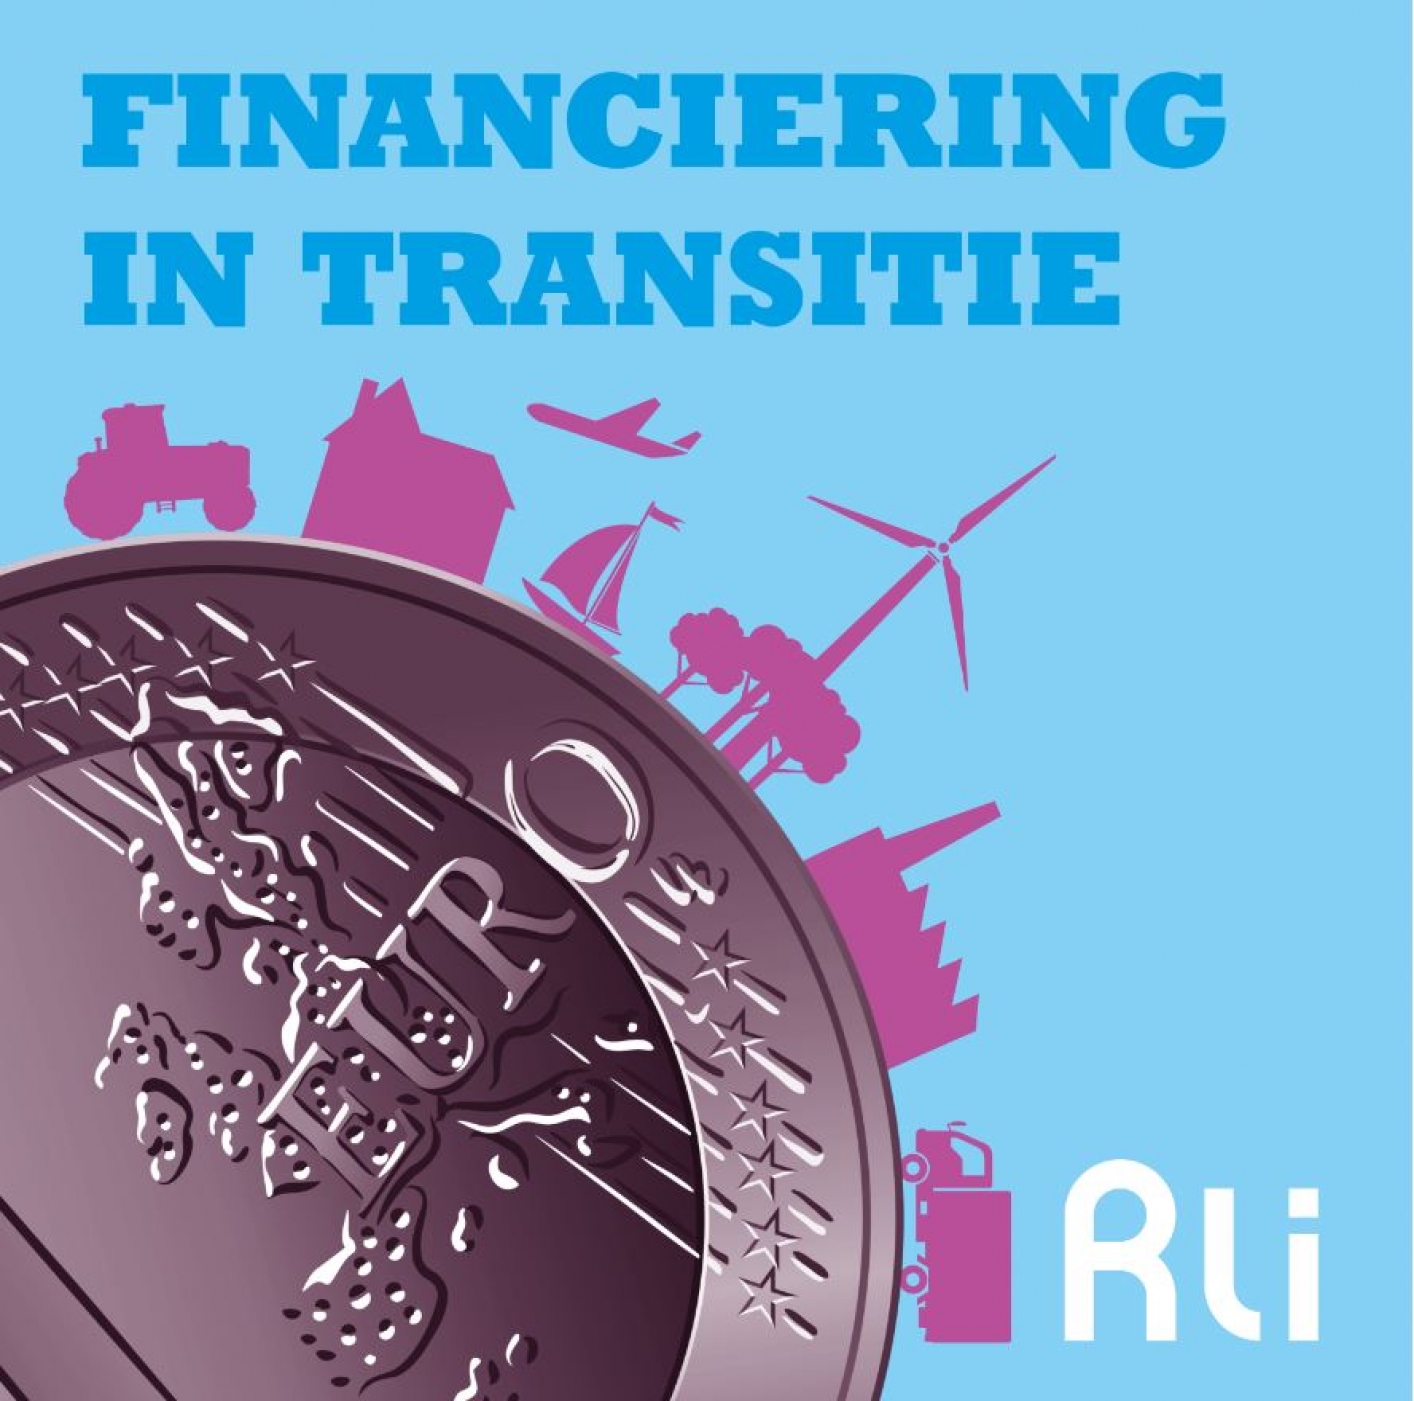 logo van podcast Fianaciering in transitie, een beeld van een euro met daarbij een tractor, huis, vliegtuig, windmolen, bos en industrie